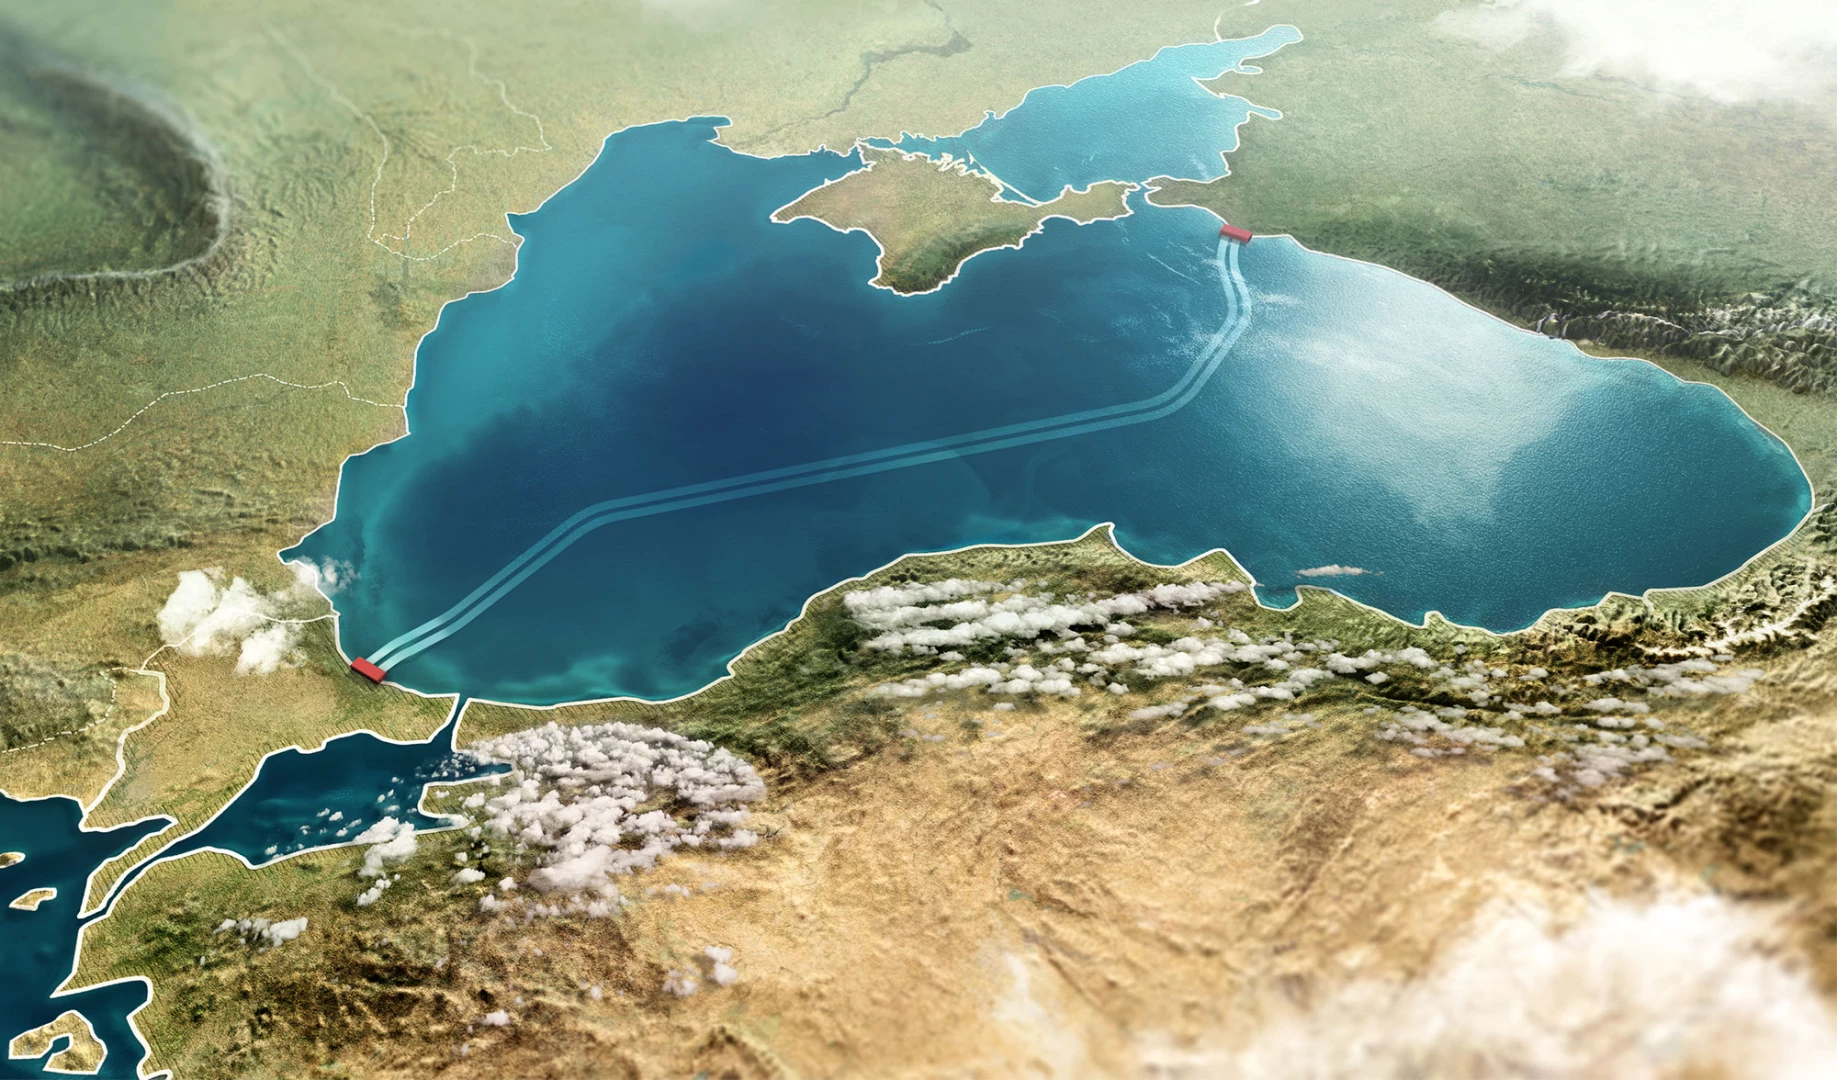 İstanbul'daki doğalgaz ‘hub’ı projesi, Türkiye'nin küresel enerji sektöründe hak ettiği yeri almasını sağlayacak -Okay Deprem yazdı-